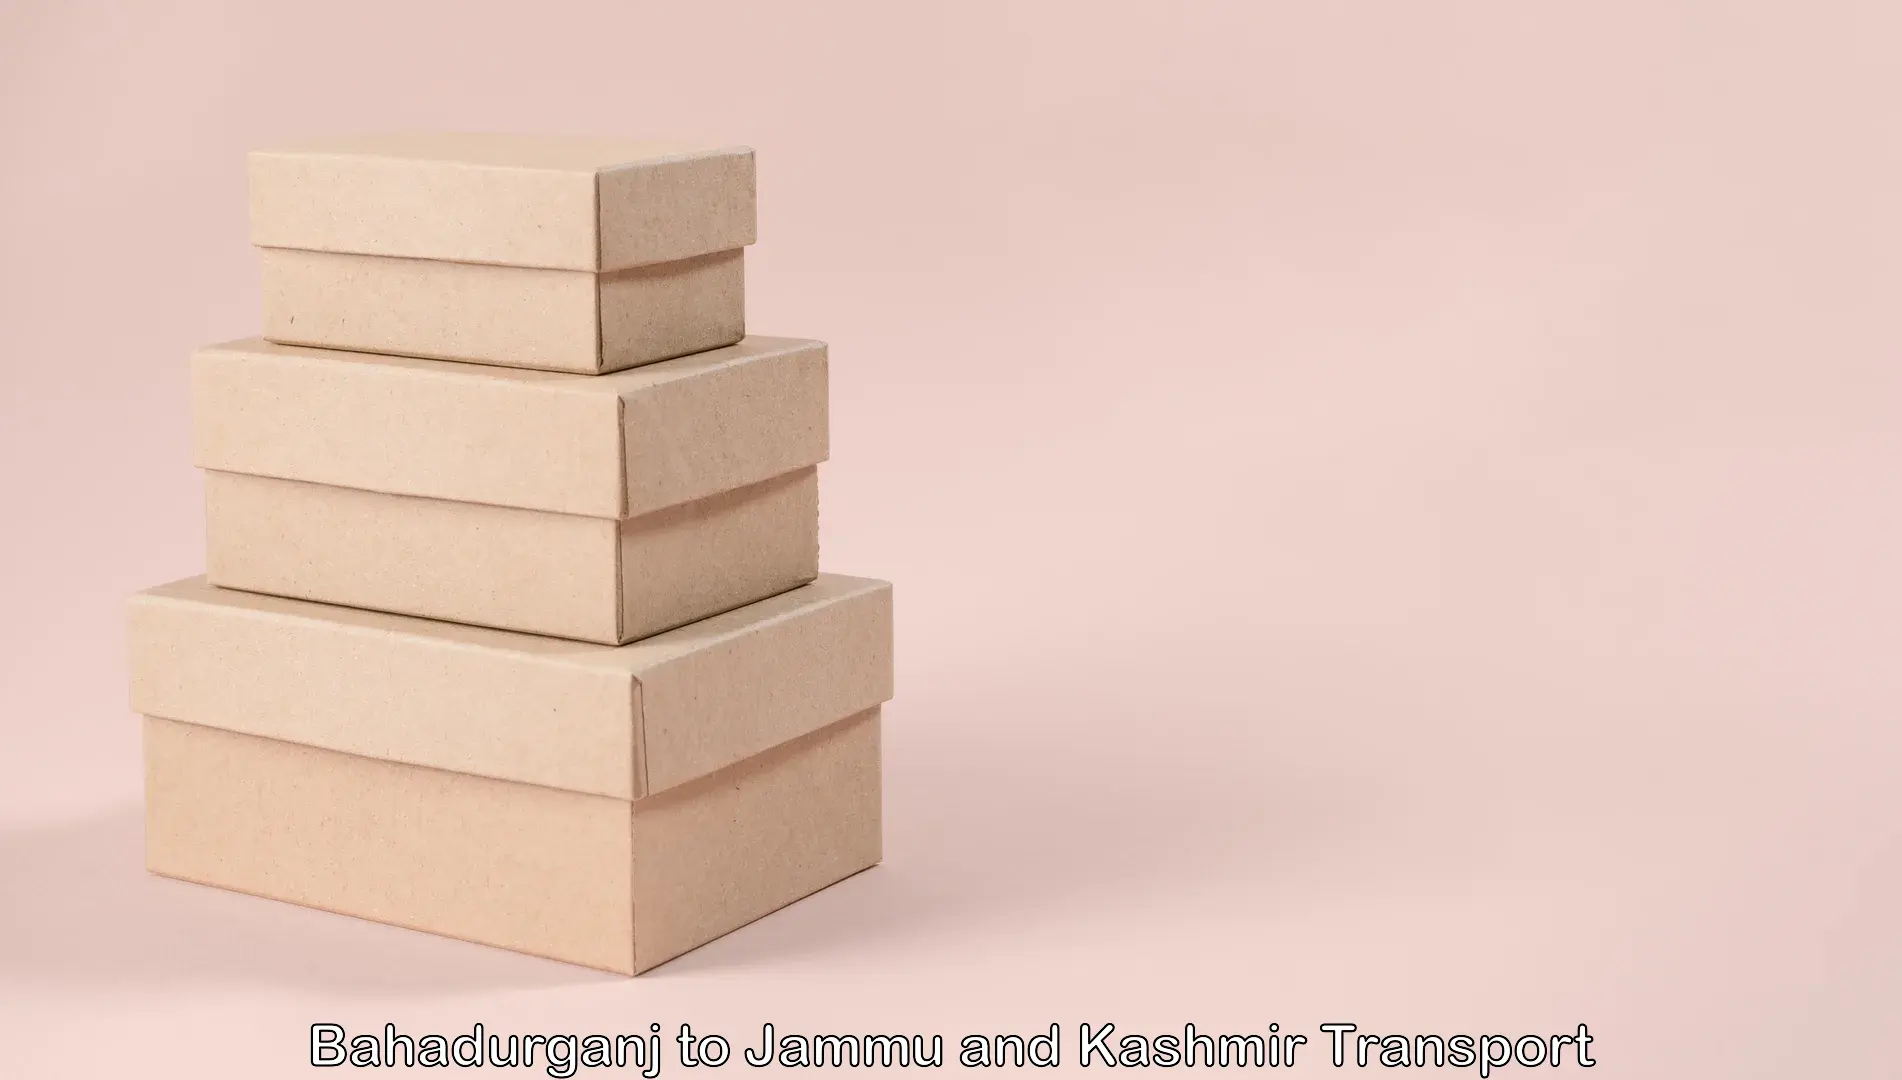 Commercial transport service Bahadurganj to Jammu and Kashmir